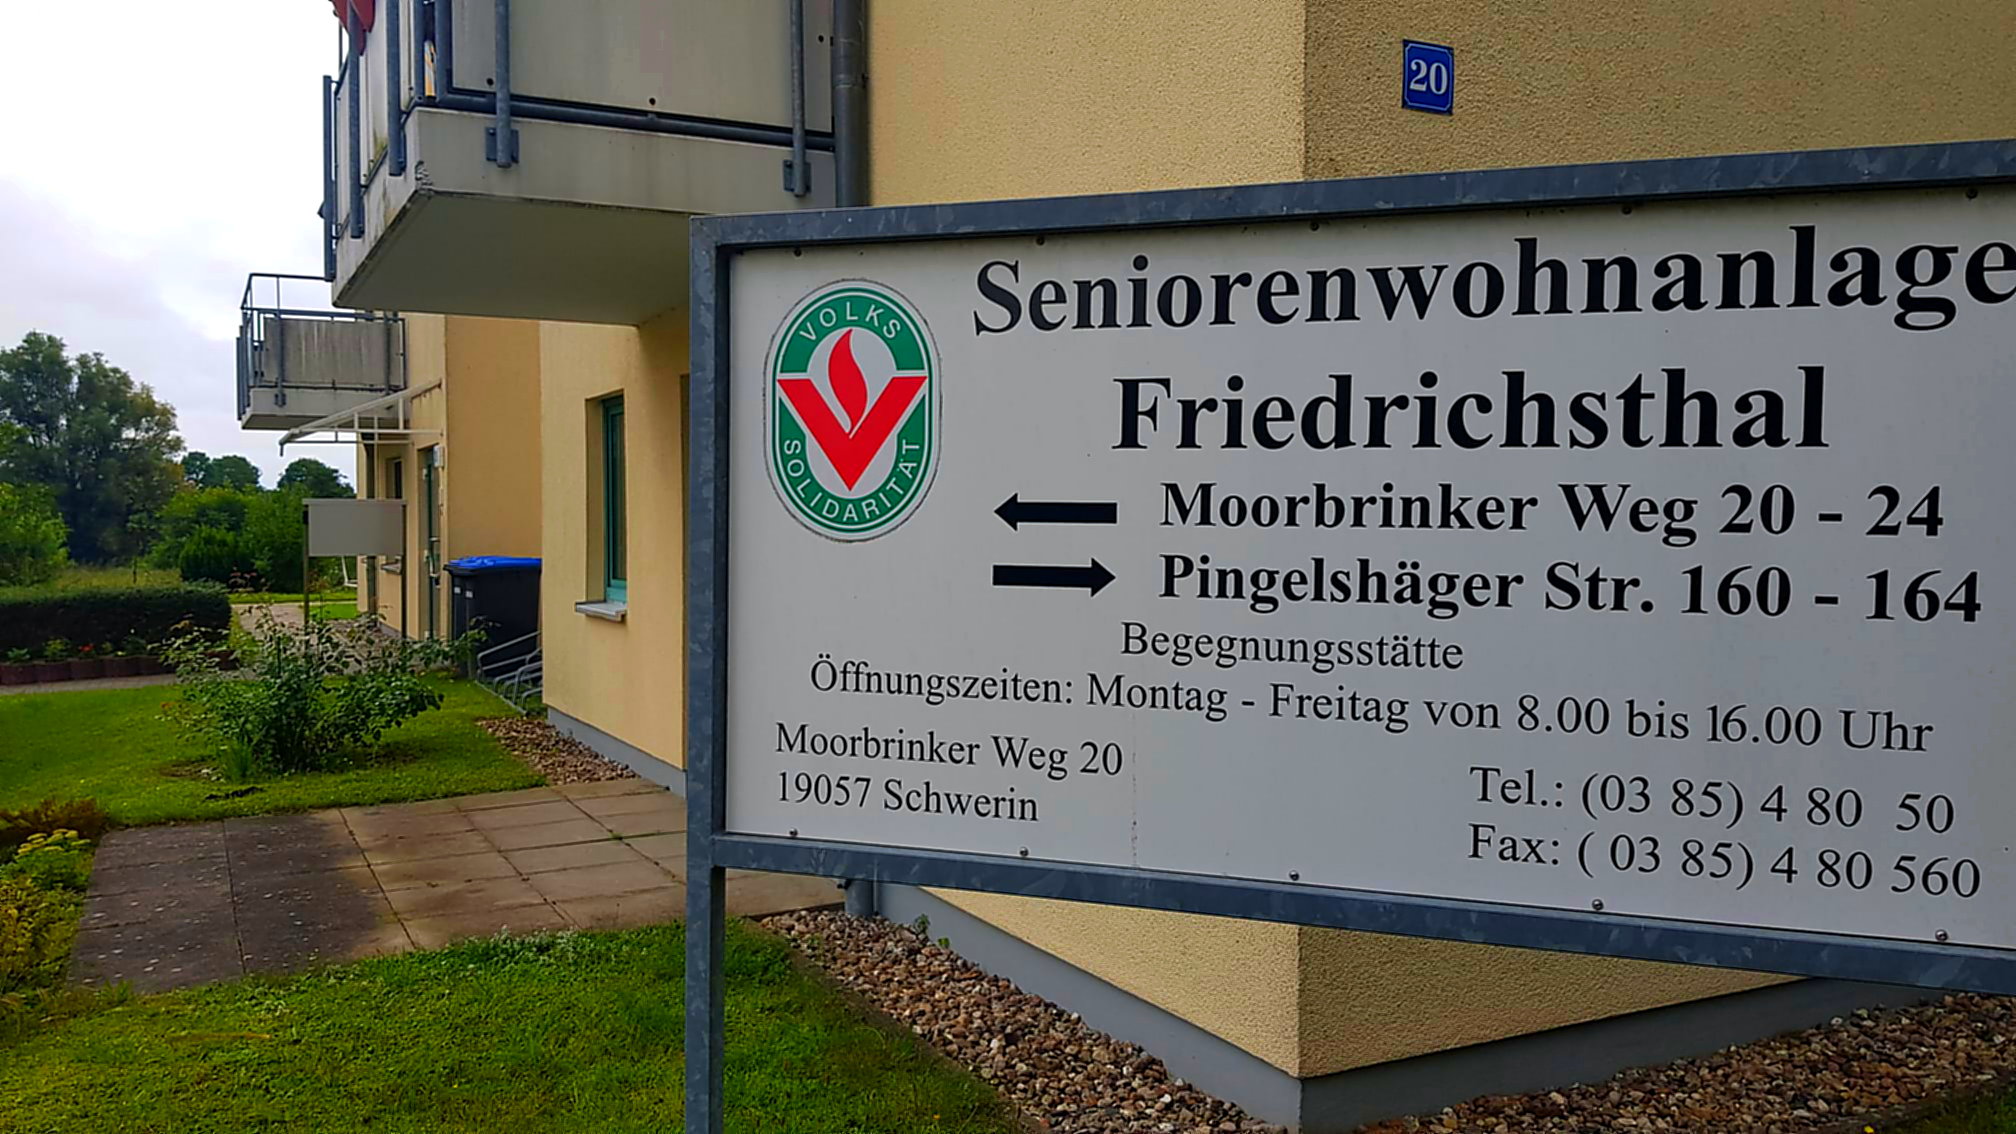 Ärger über fehlende Wahllokale in Friedrichsthal